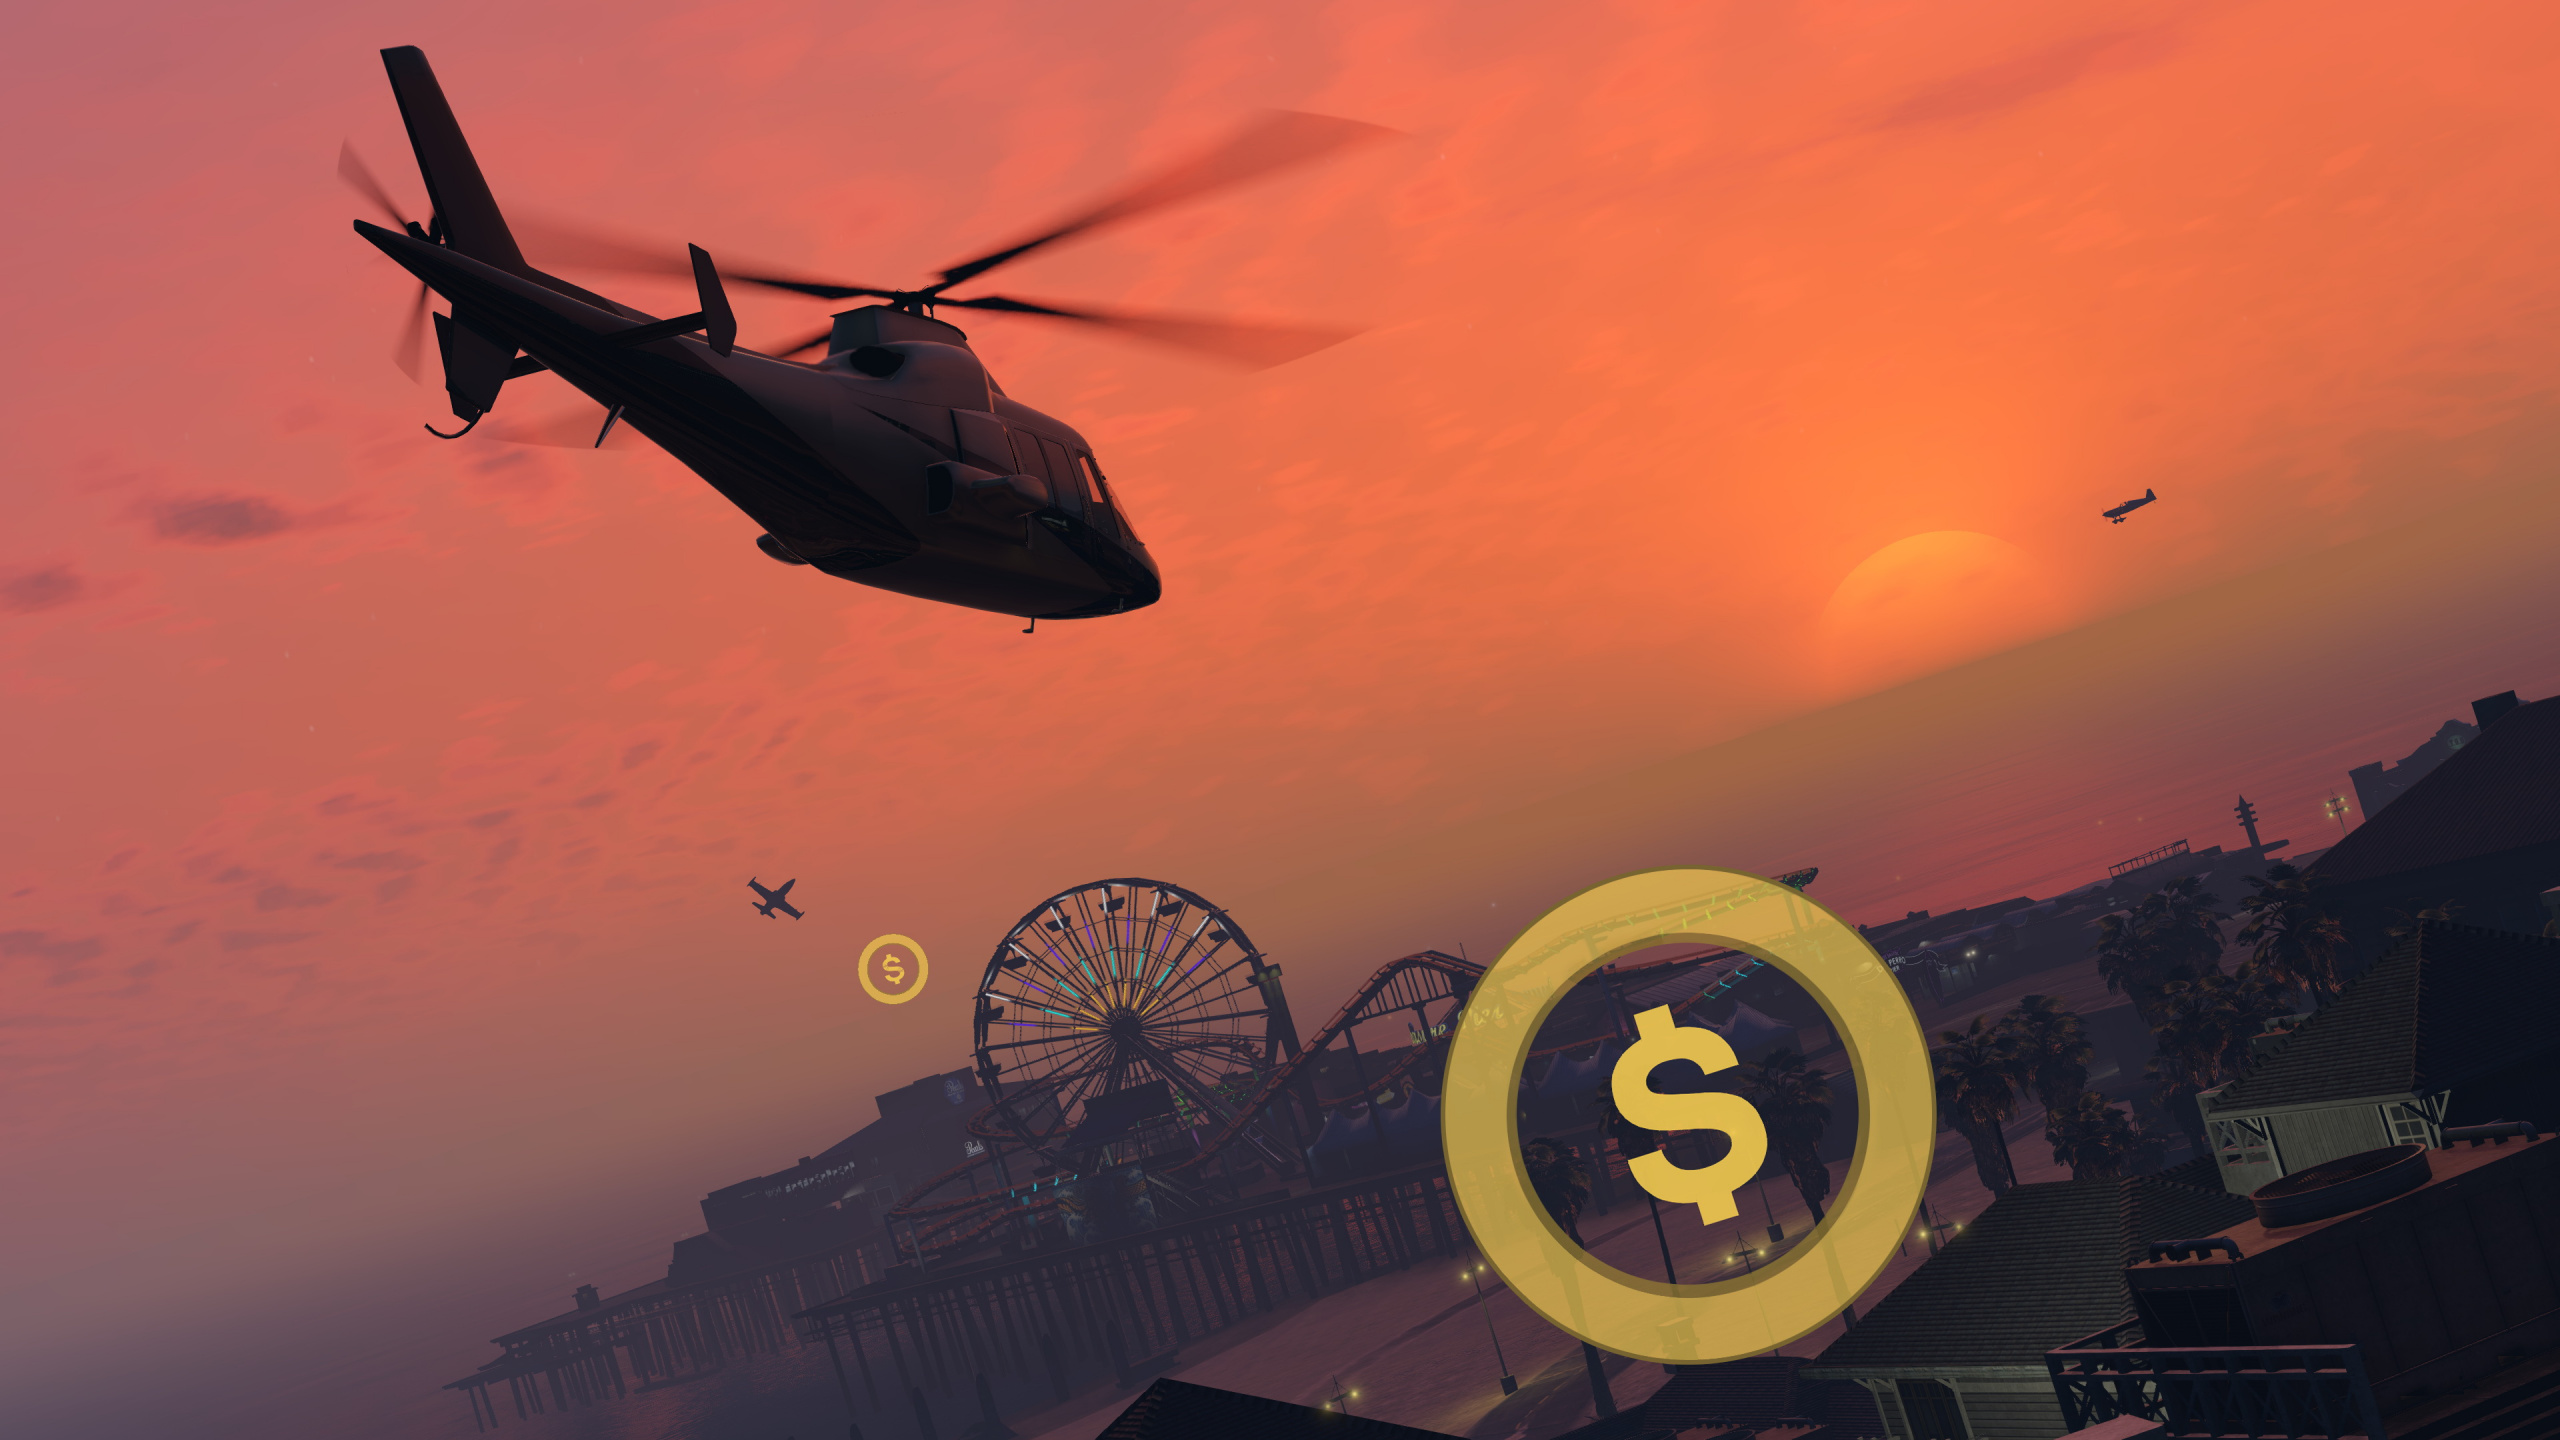 偷盗汽车v, 摇滚明星的游戏, 开放的世界, Ps4, 直升机 壁纸 2560x1440 允许